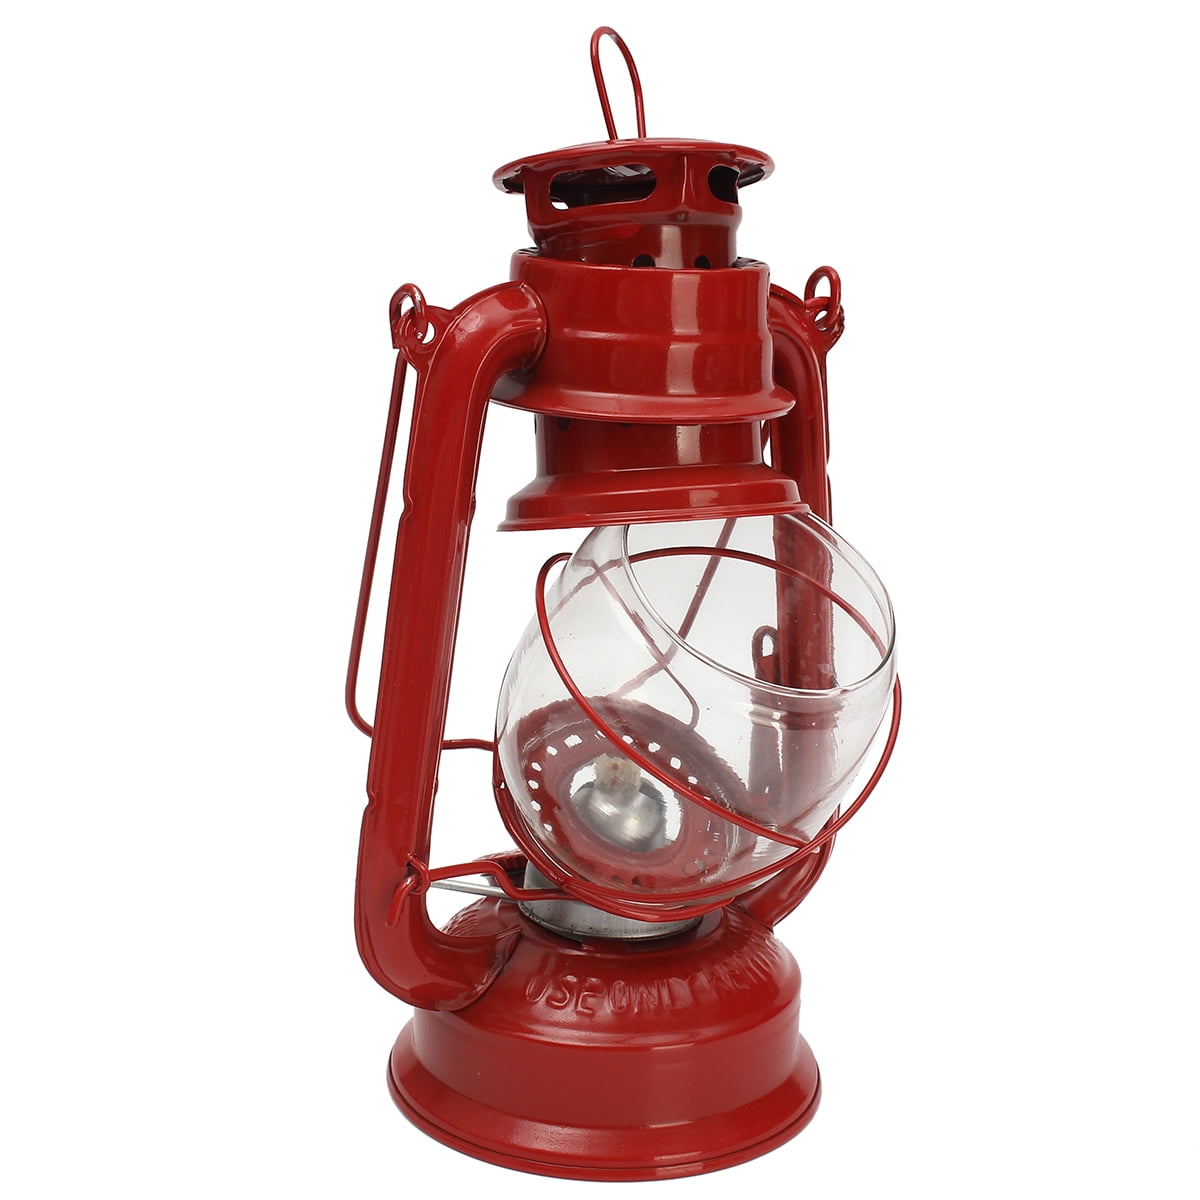 Vintage Oil Lamp Lantern Kerosene Paraffin Hurricane Lamp Light Outdoor ...